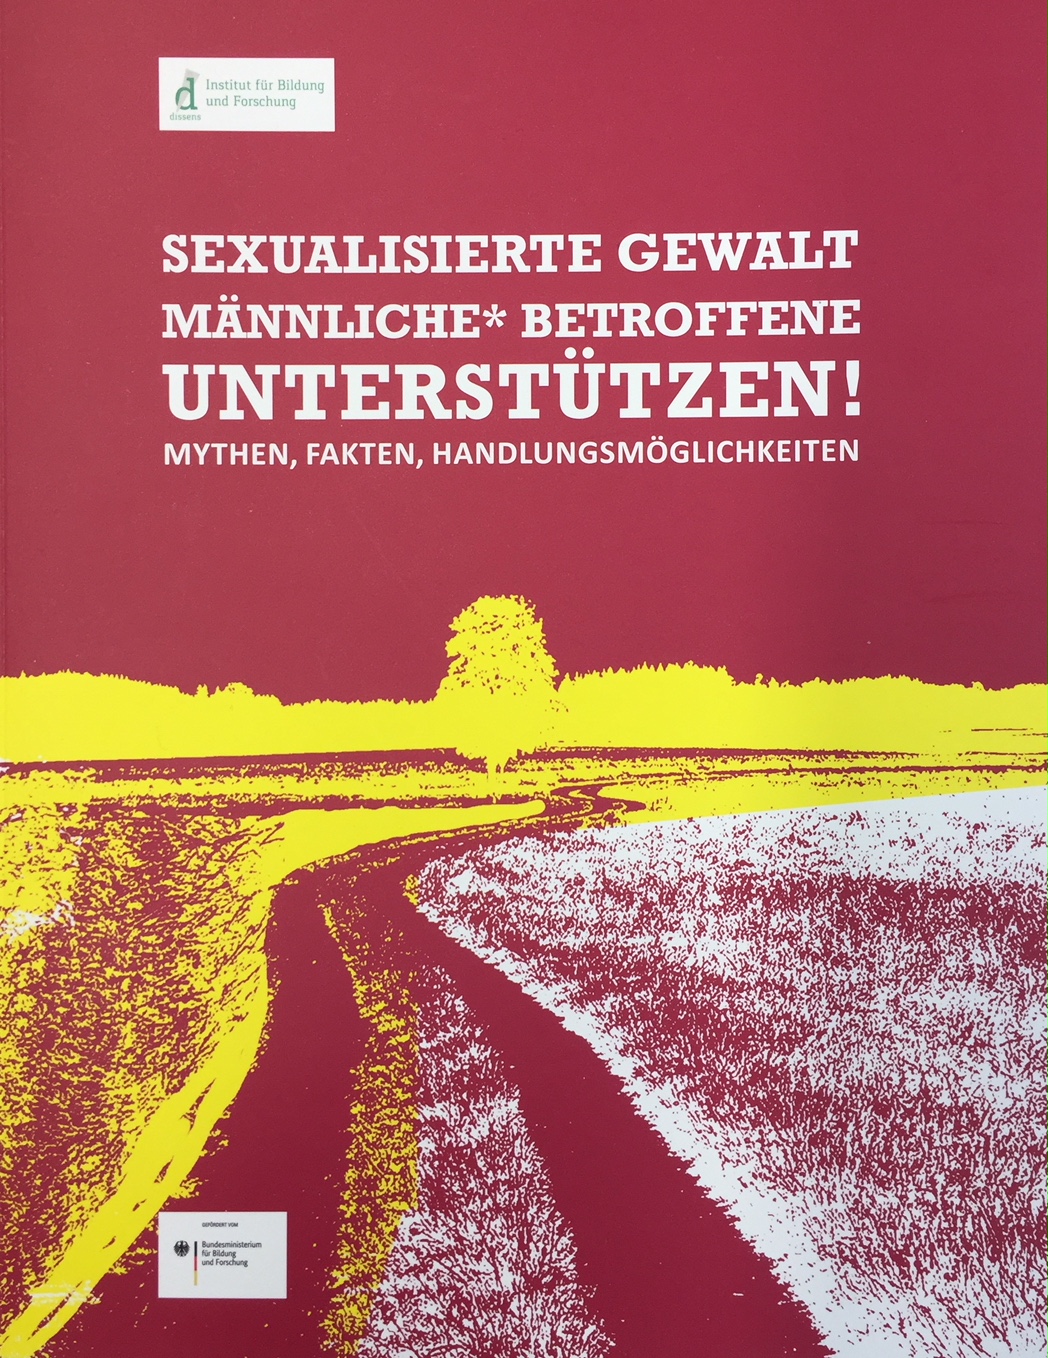 Broschüre "Sexualisierte Gewalt - Männliche* Betroffene unterstützen" von Dissens